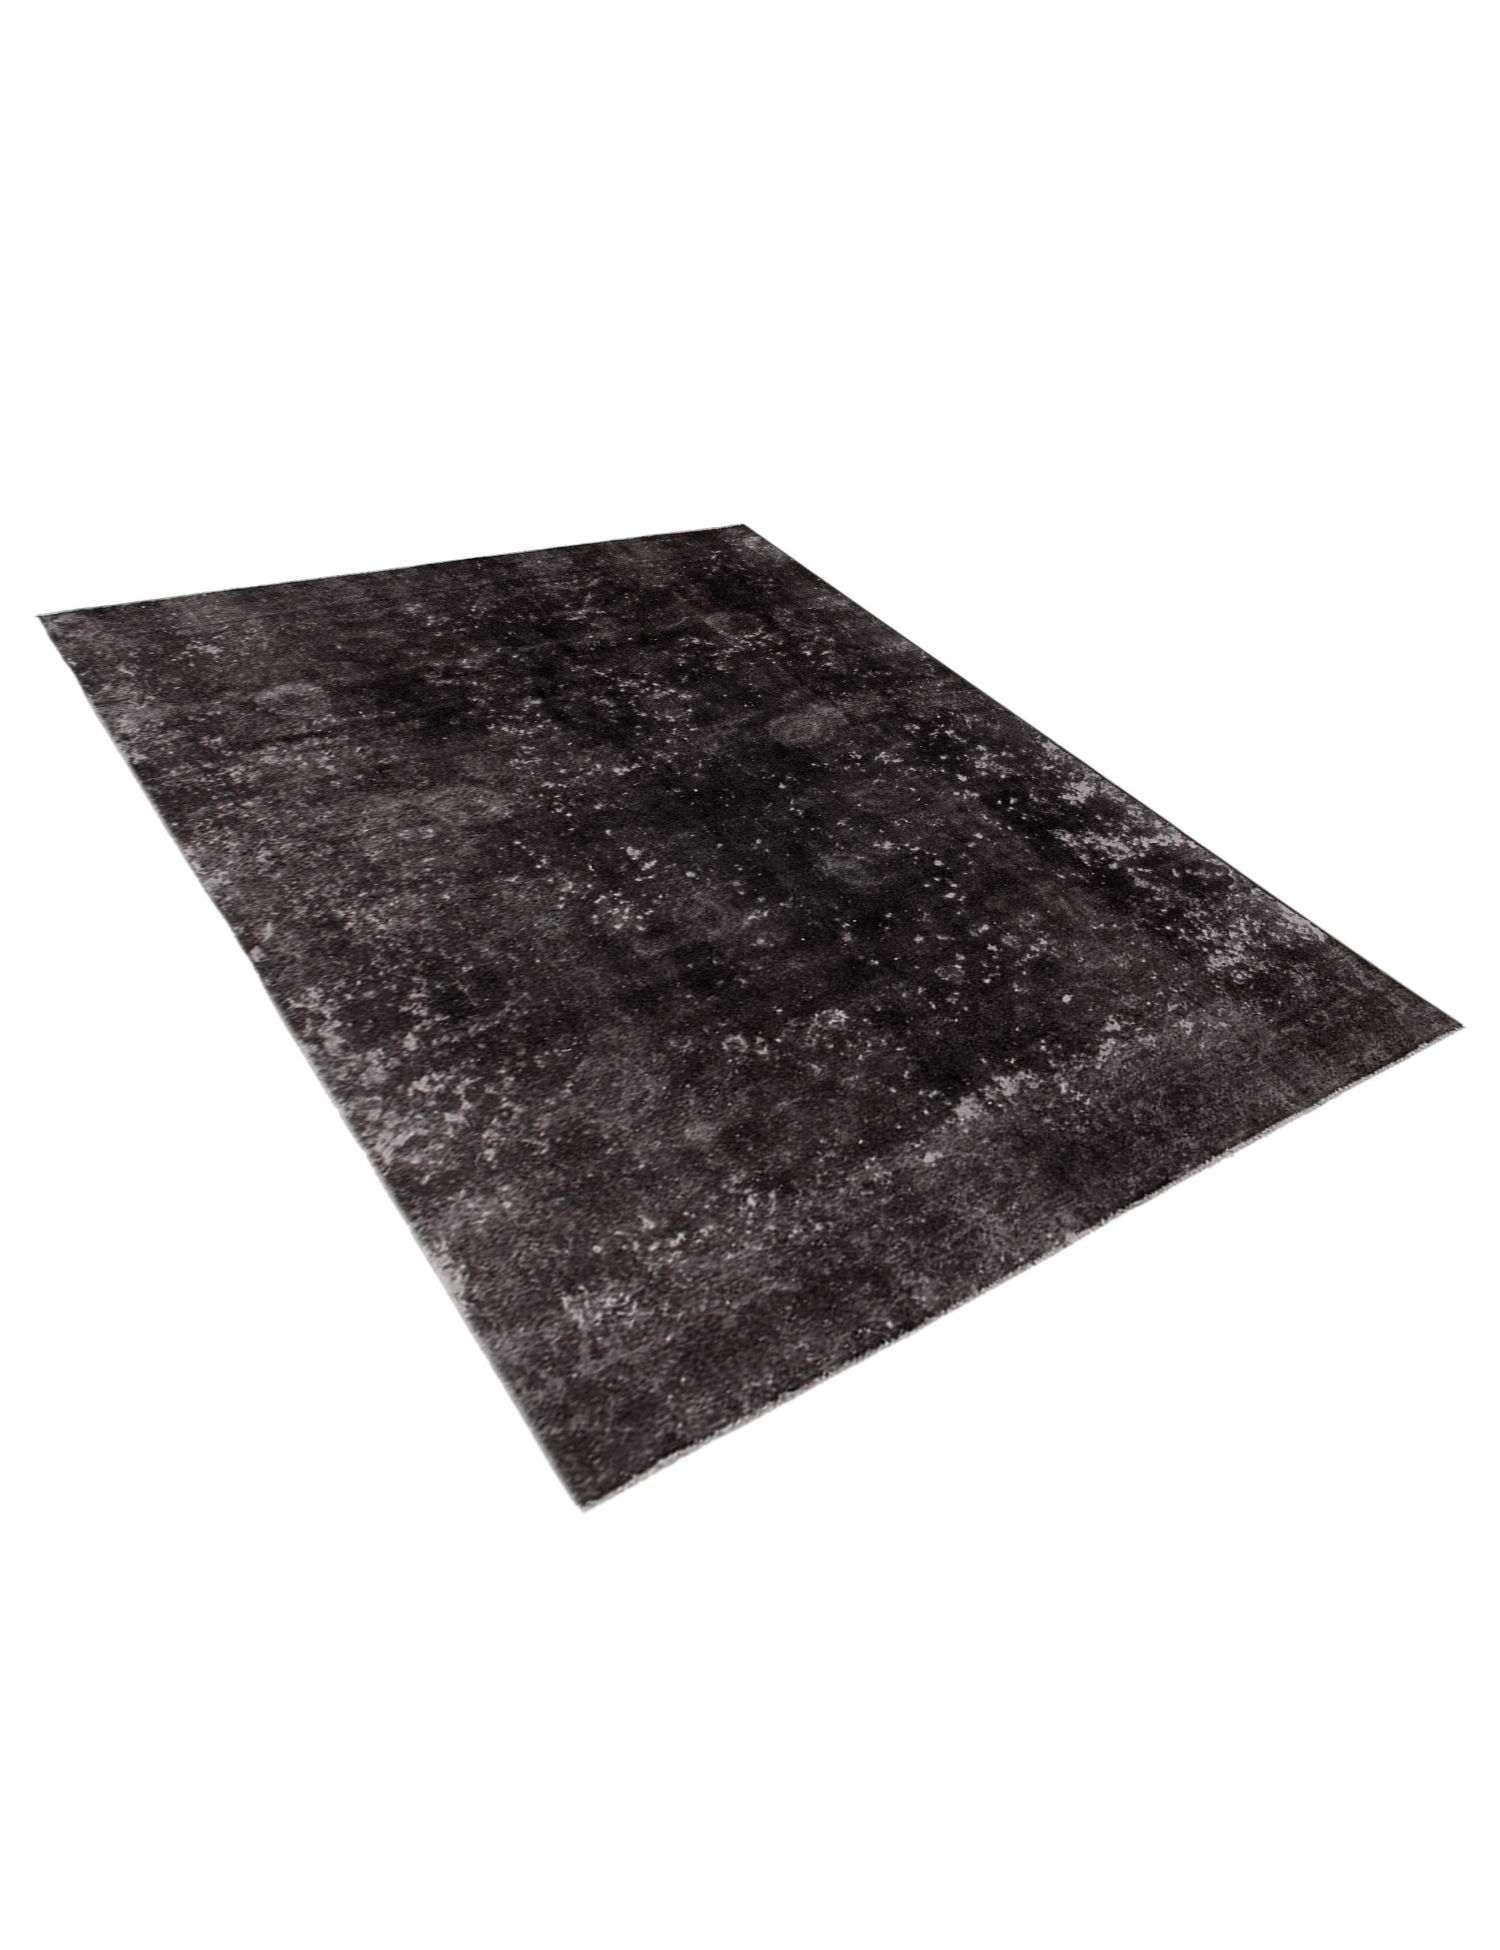 Persischer Vintage Teppich  schwarz <br/>275 x 190 cm